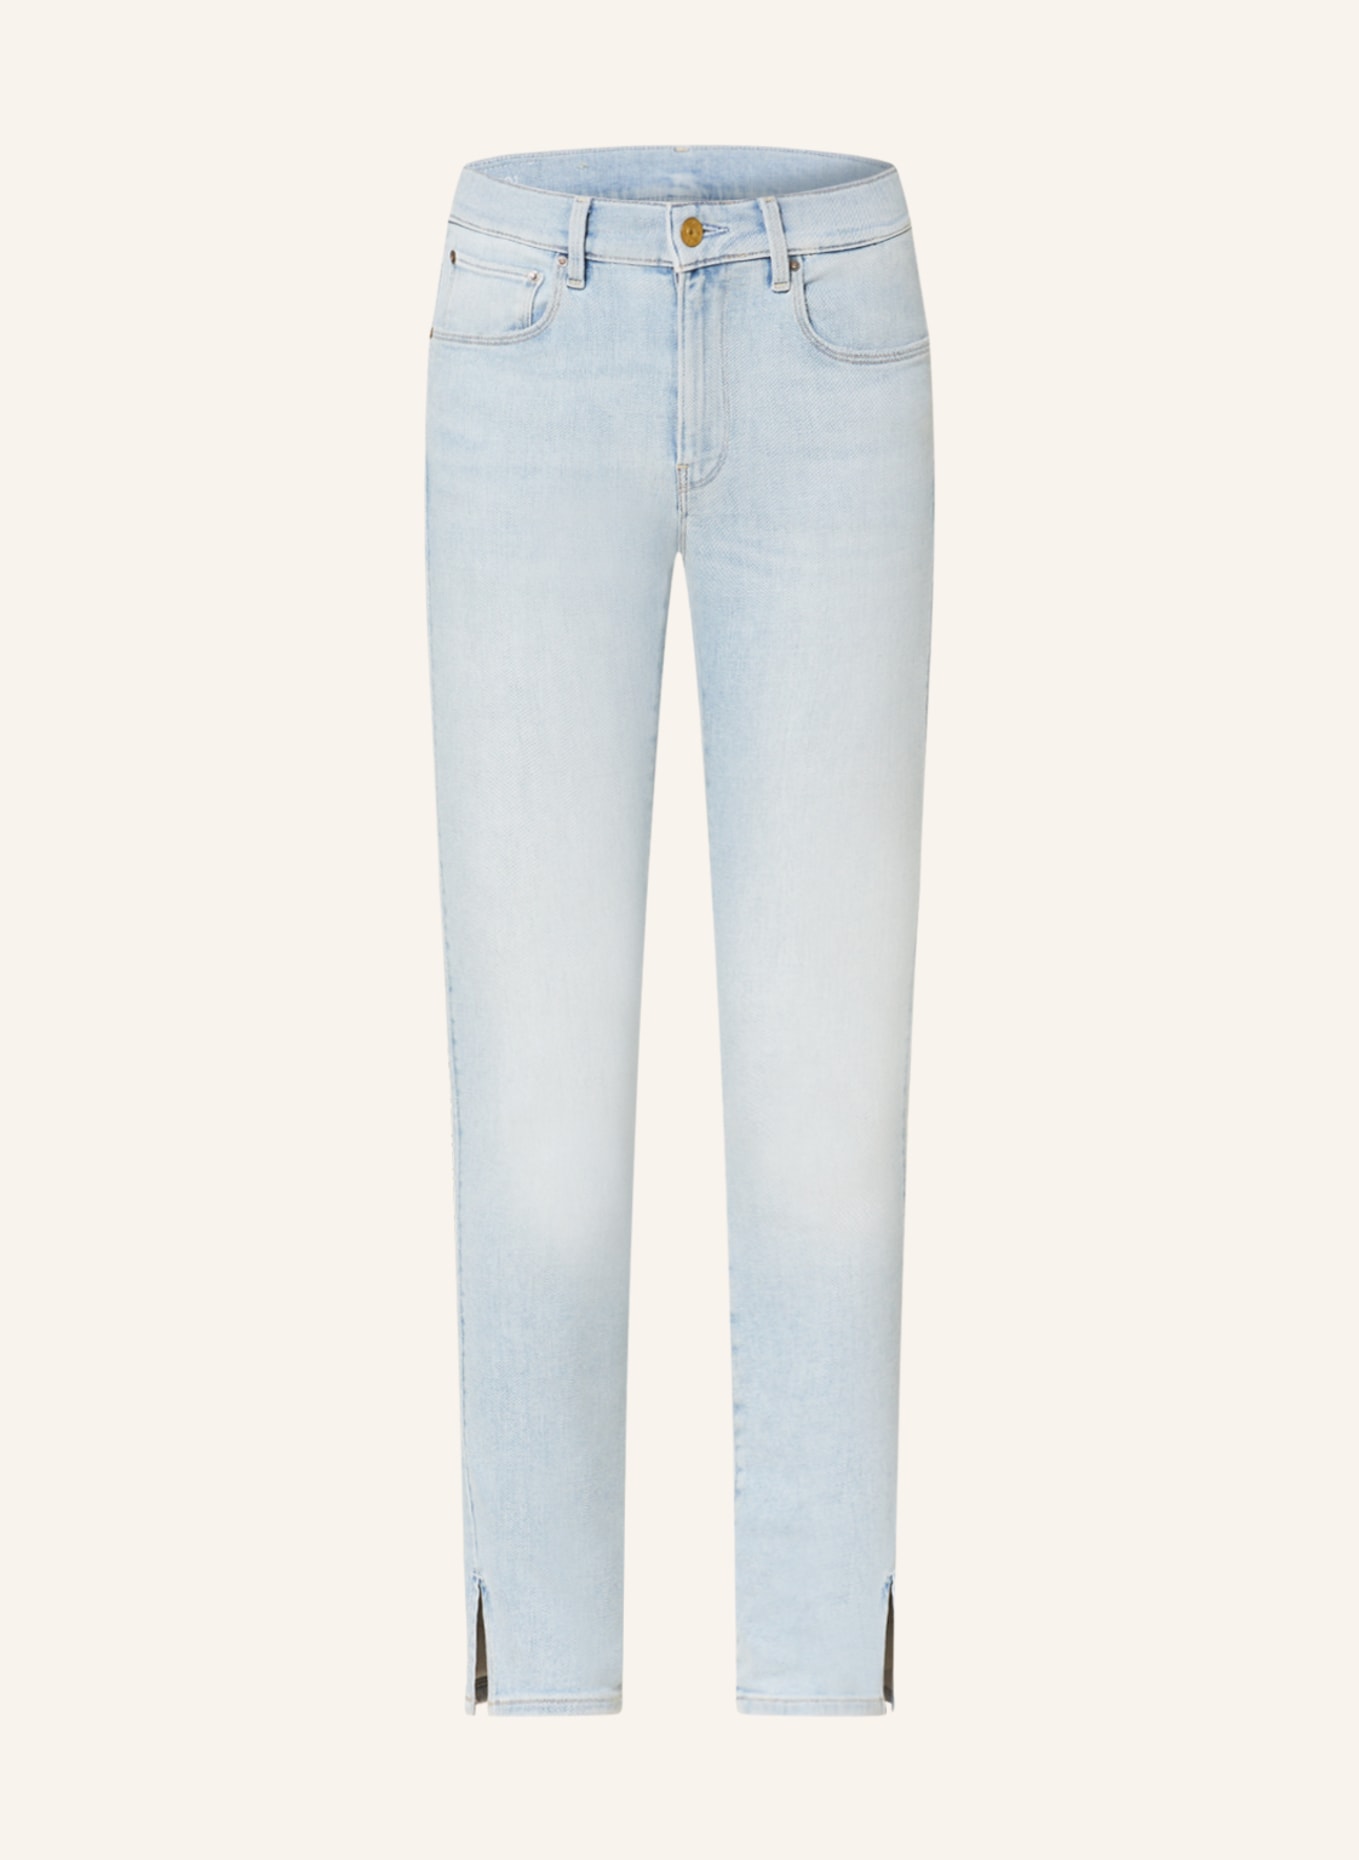 G-Star RAW Skinny Jeans SPLIT, Farbe: G307 sun faded bluejay (Bild 1)